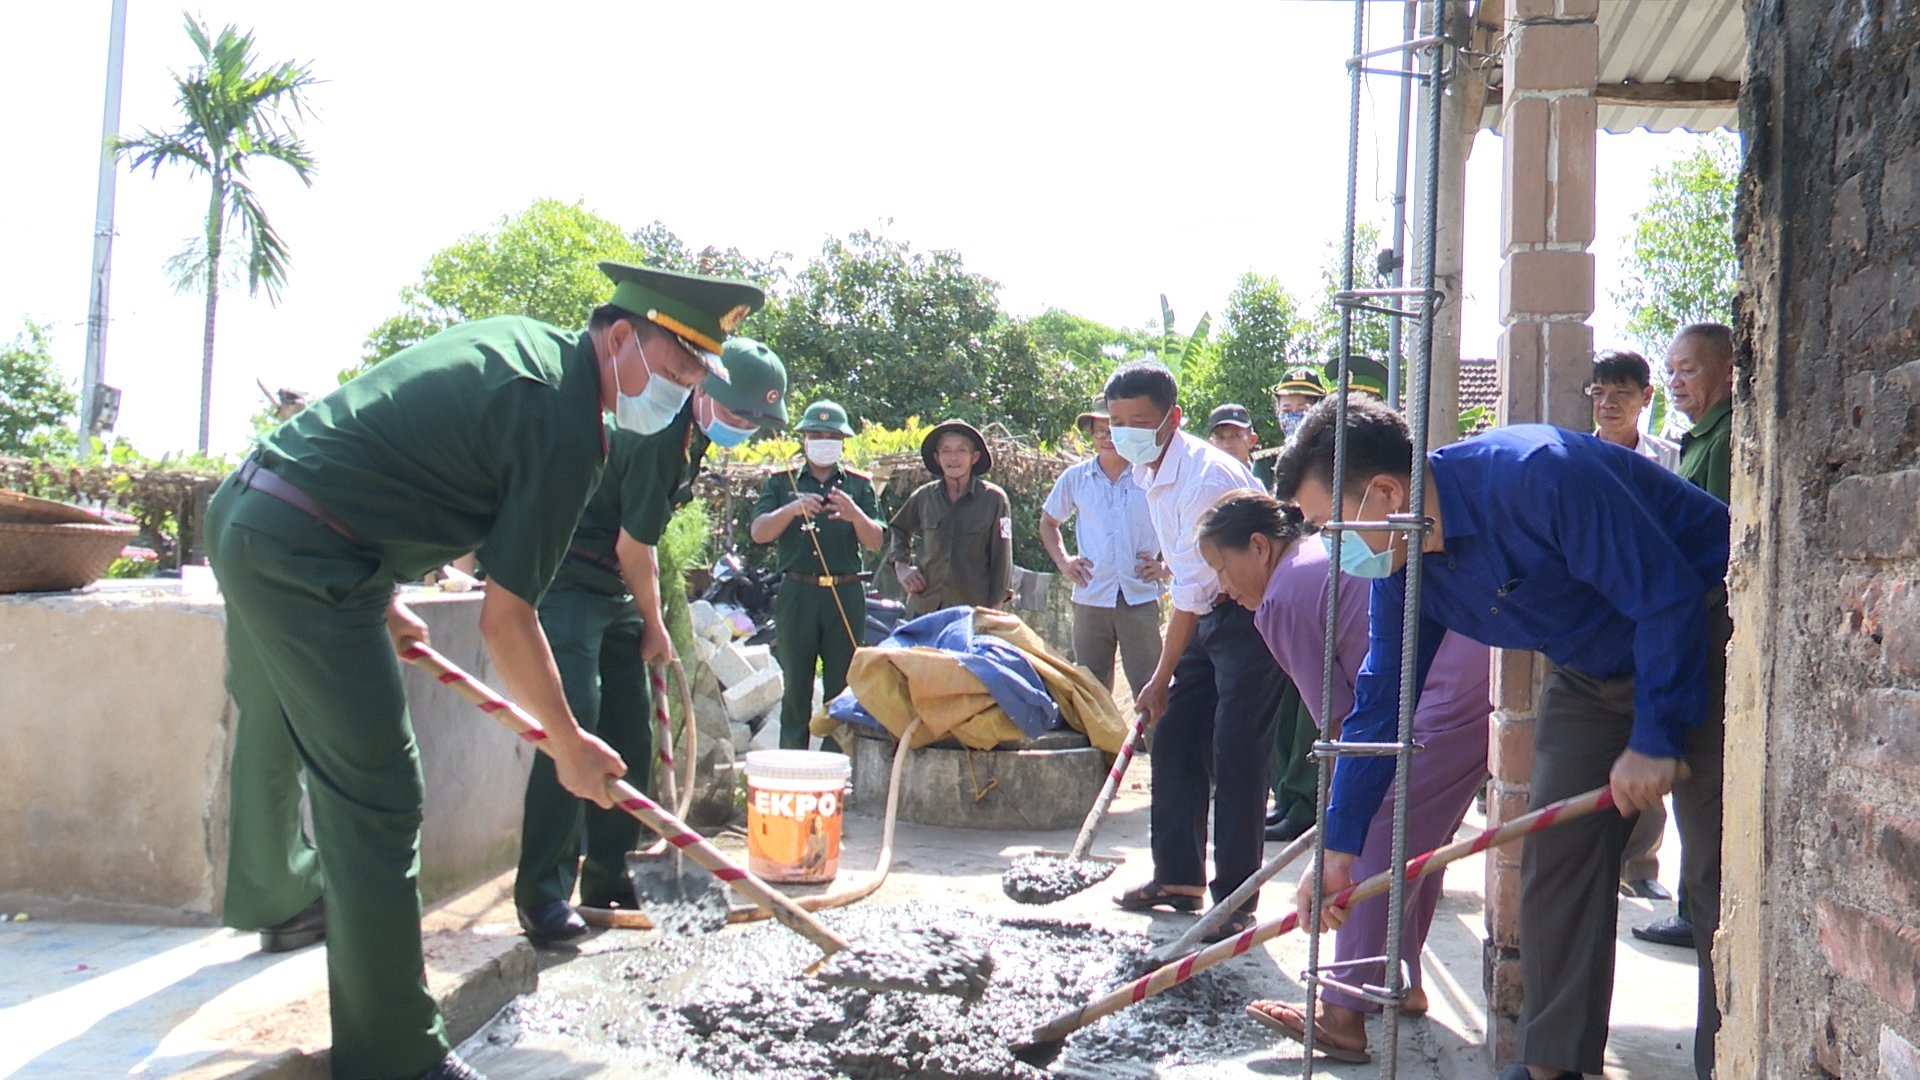 Thượng tá Nguyễn Xuân Toàn, Chính ủy BĐBP tỉnh ( Ngoài cùng, bên trái) và lãnh đạo Phòng Chính trị dự lễ khởi công xây dựng nhà thờ Mẹ VNAH.